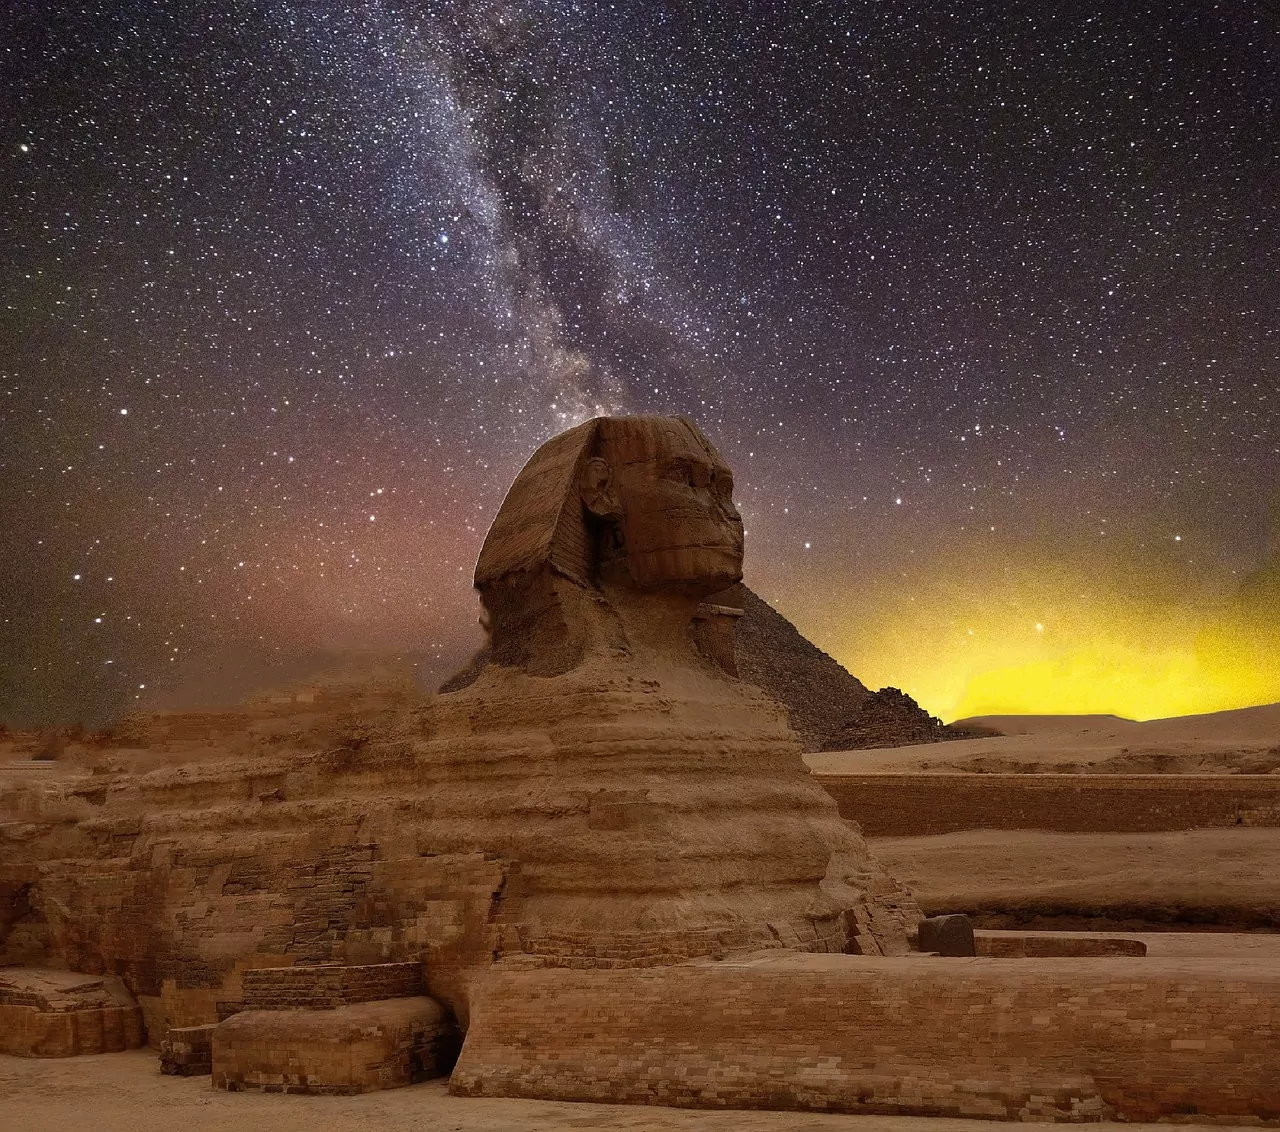 stars, night sky, pyramids - Sphinx